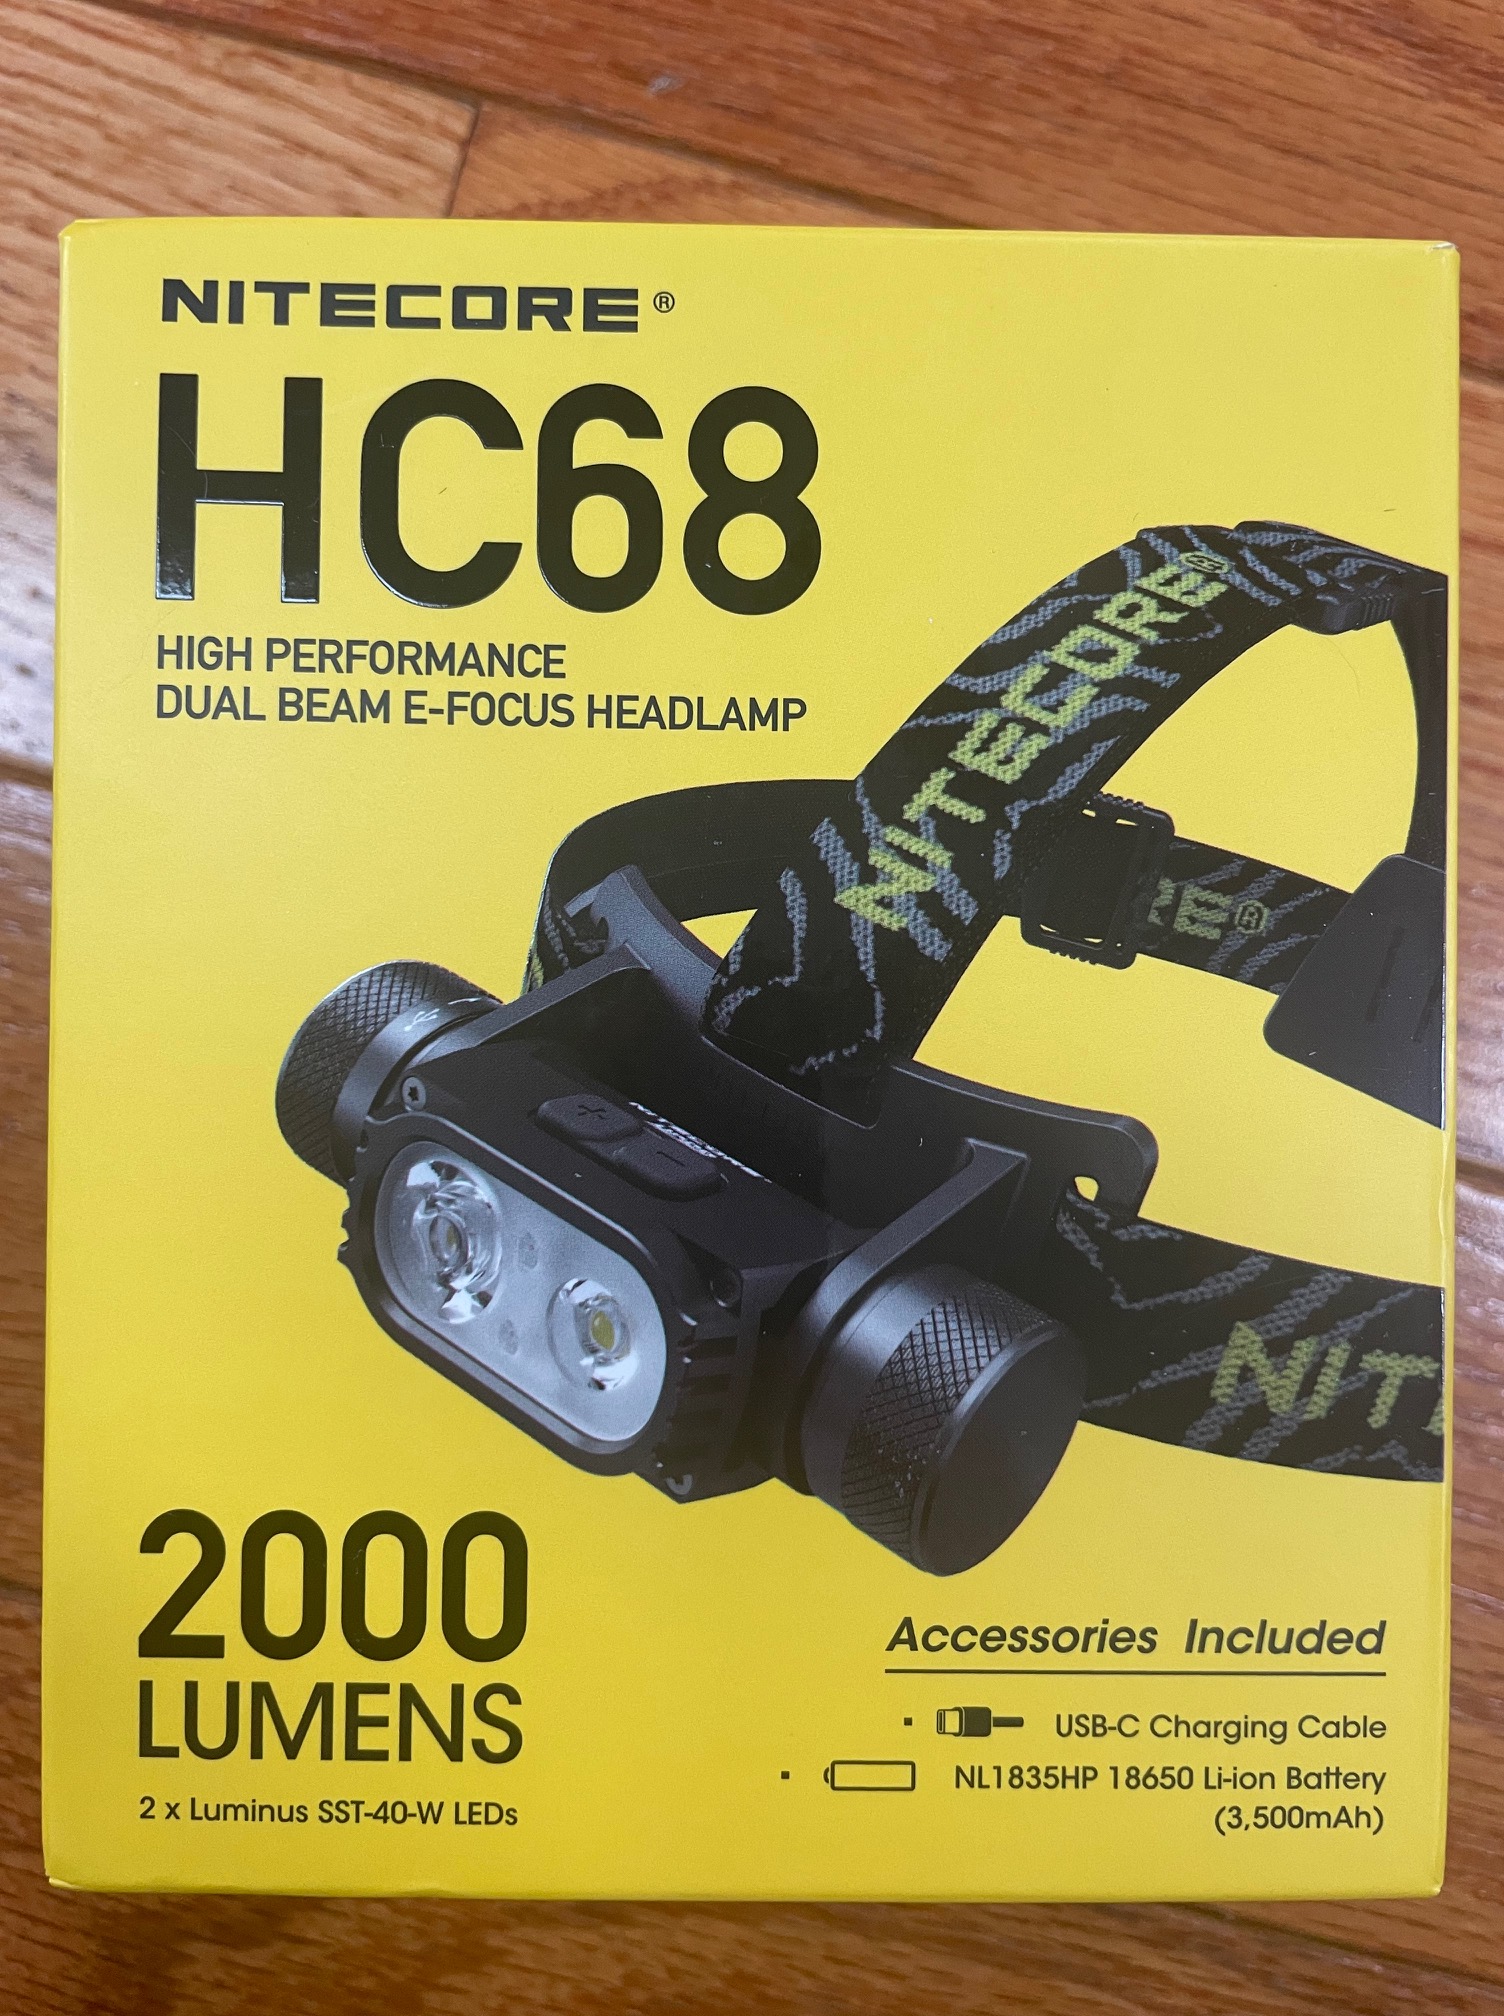  HC68 High Performance Dual Beam E-Focus Headlamp Review - A .